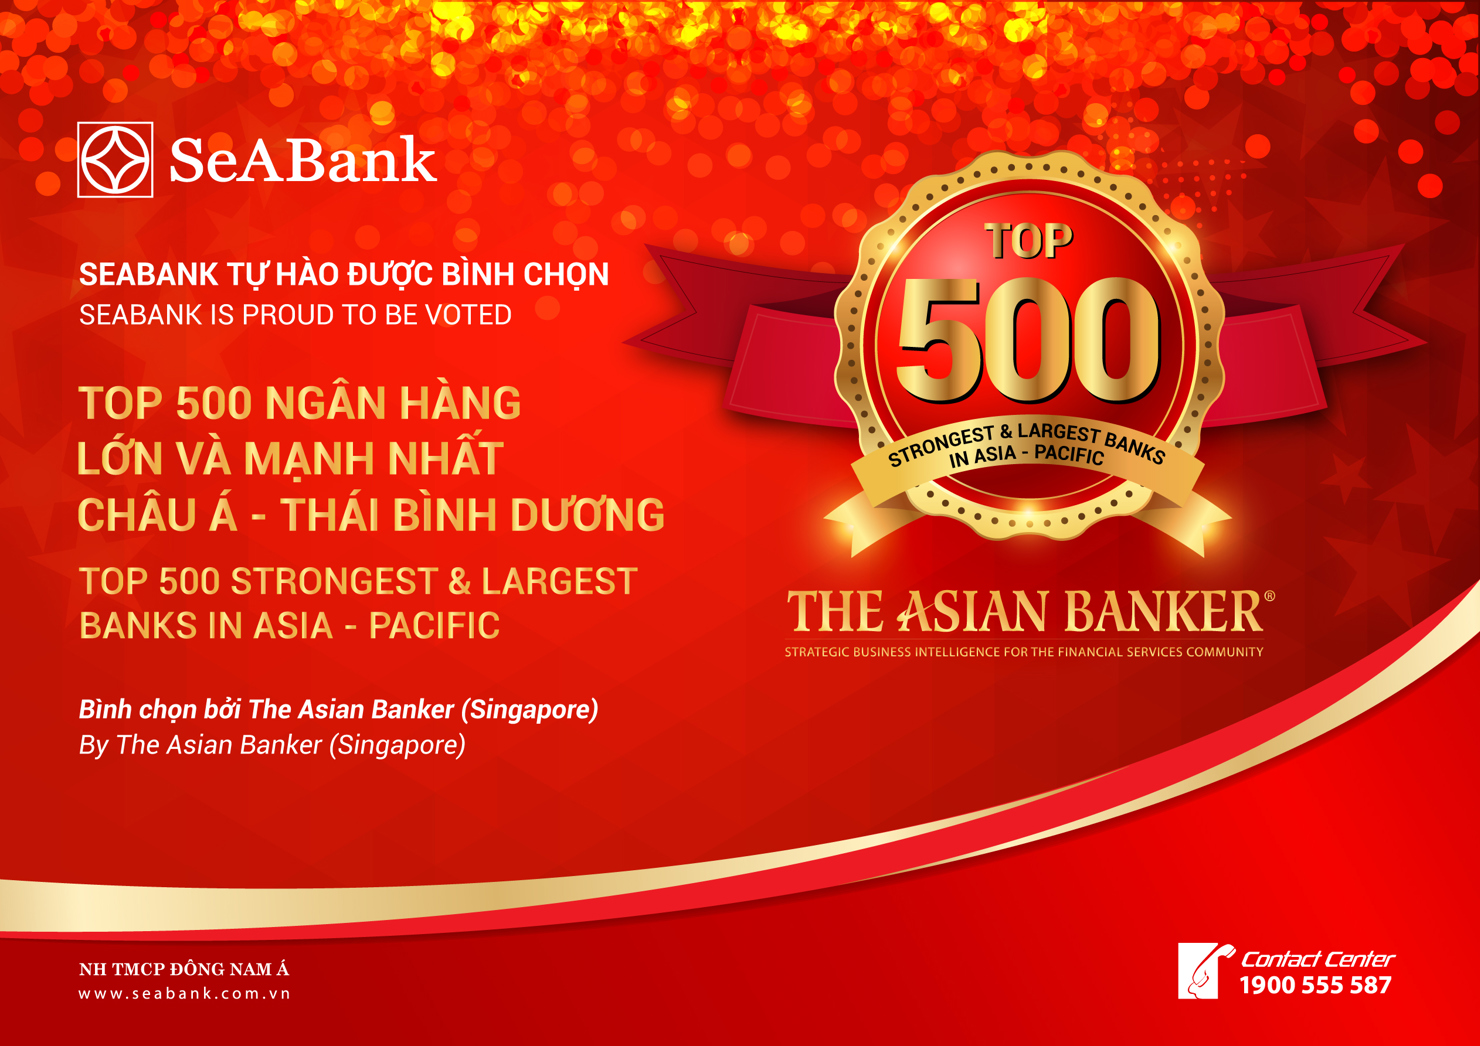 SeABank đã ngày càng khẳng định vị thế trên thị trường tài chính – ngân hàng trong nước nói riêng, toàn khu vực nói chung.